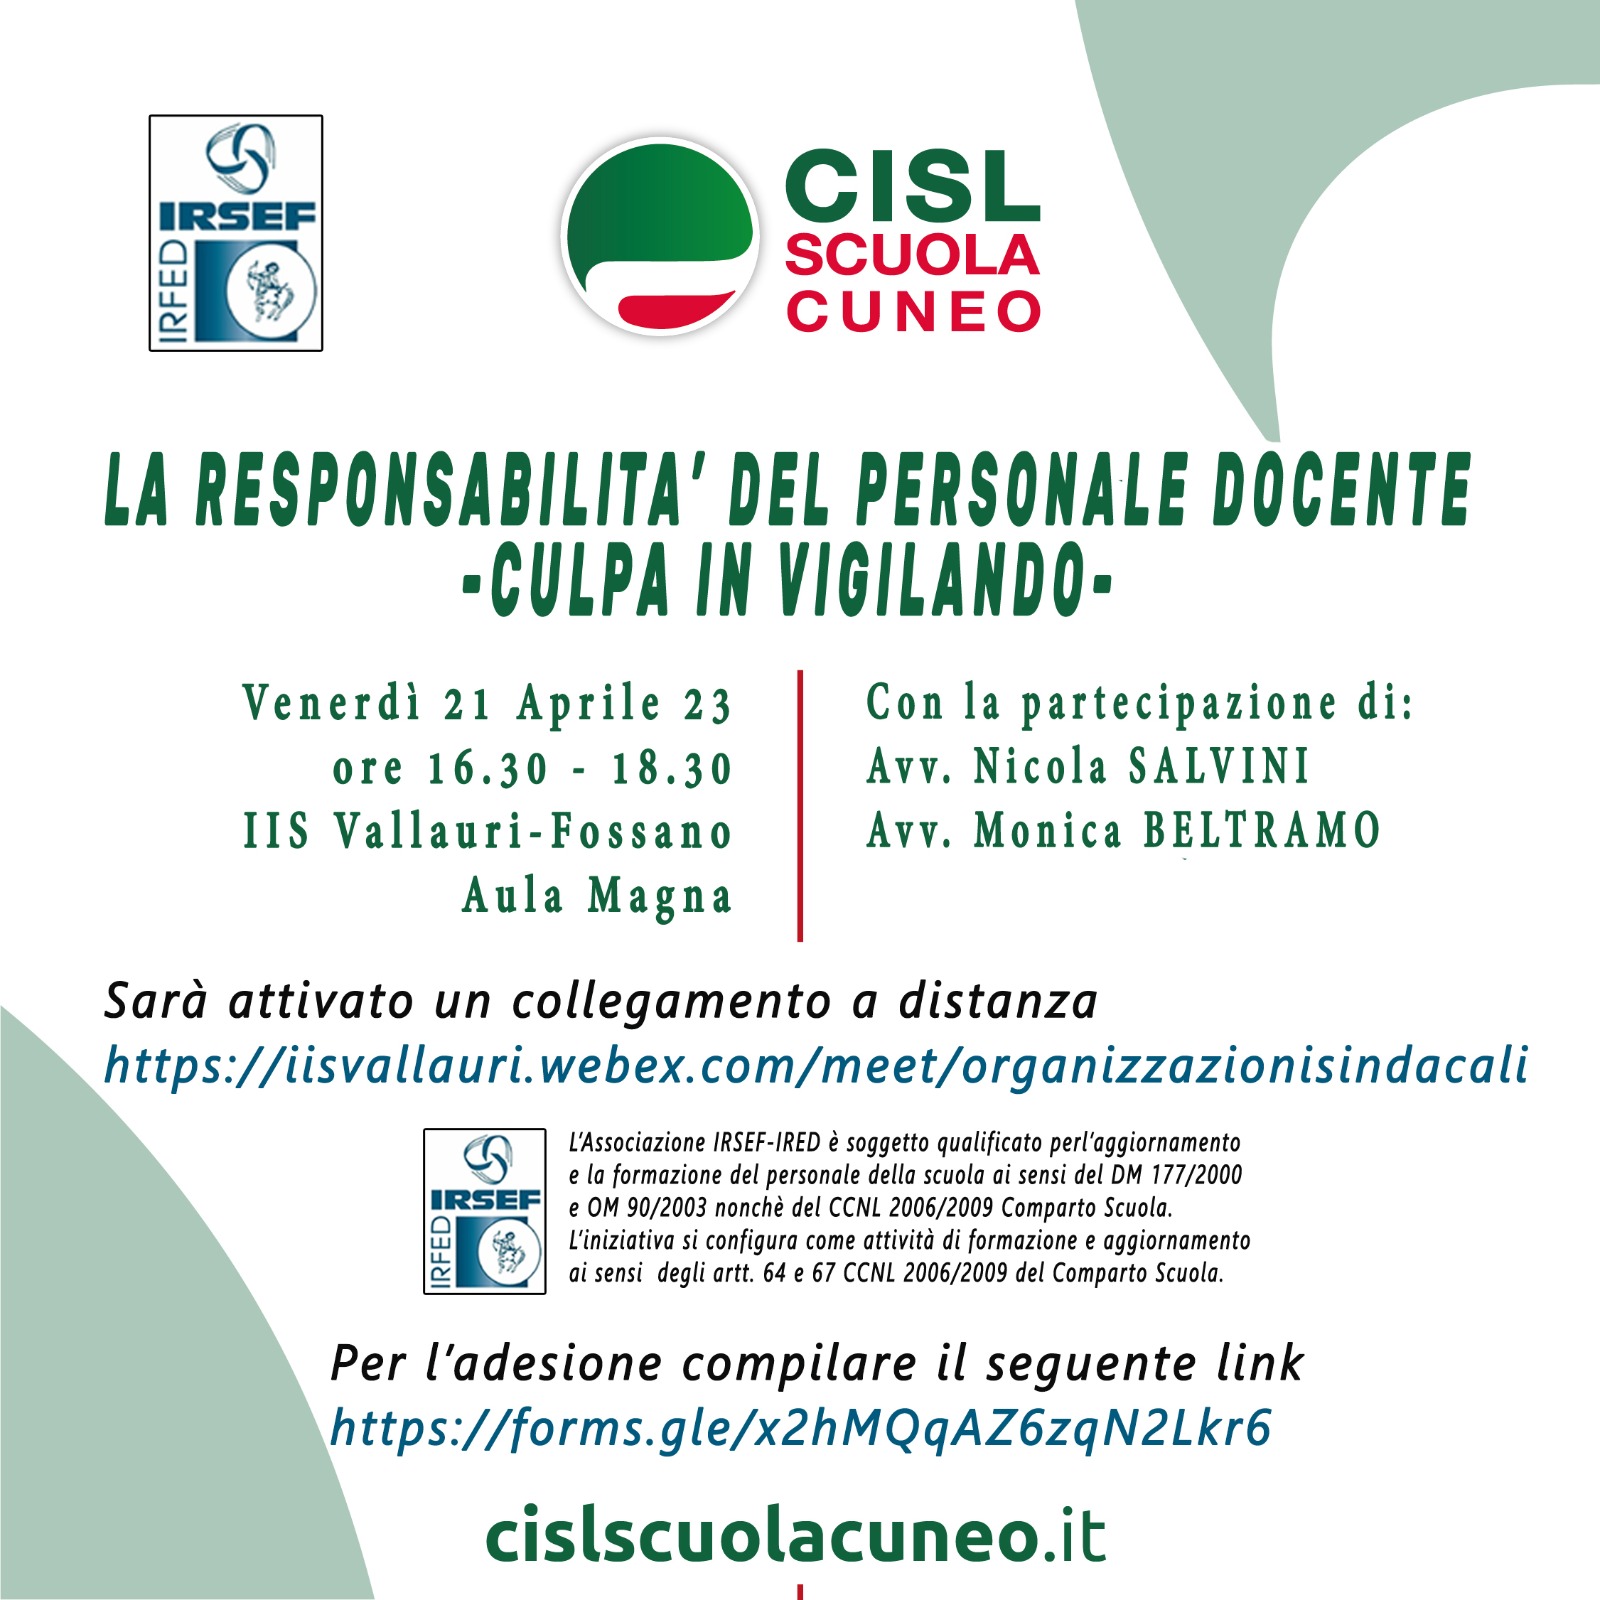 LA RESPONSABILITA’ DEL PERSONALE DOCENTE – Evento formativo organizzato da Cisl Scuola Cuneo